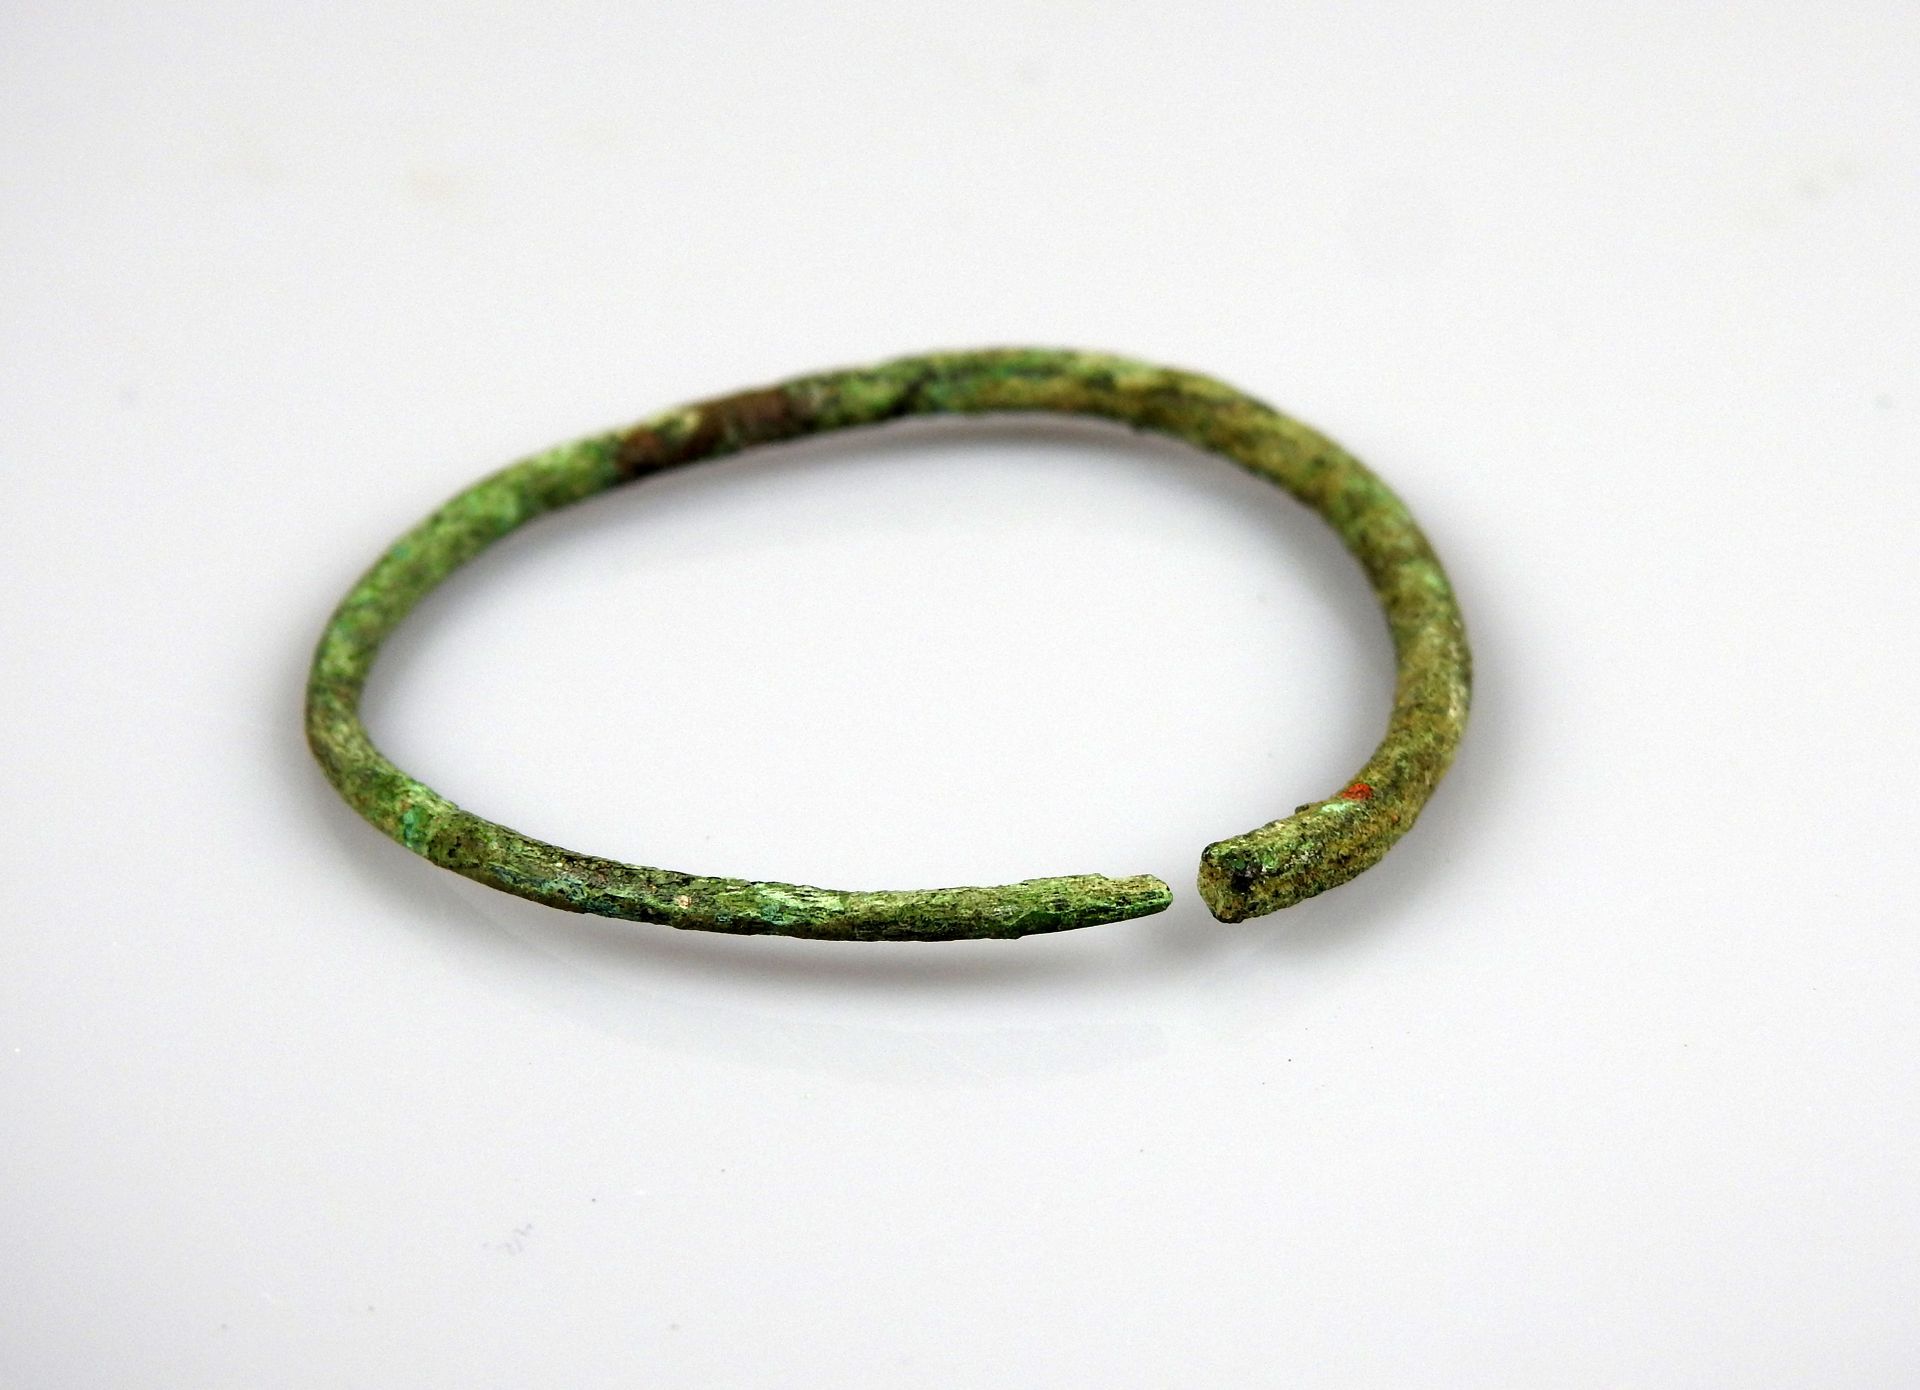 Null 儿童的手镯

前19世纪某省著名人士的收藏

青铜4.2厘米

青铜时代晚期